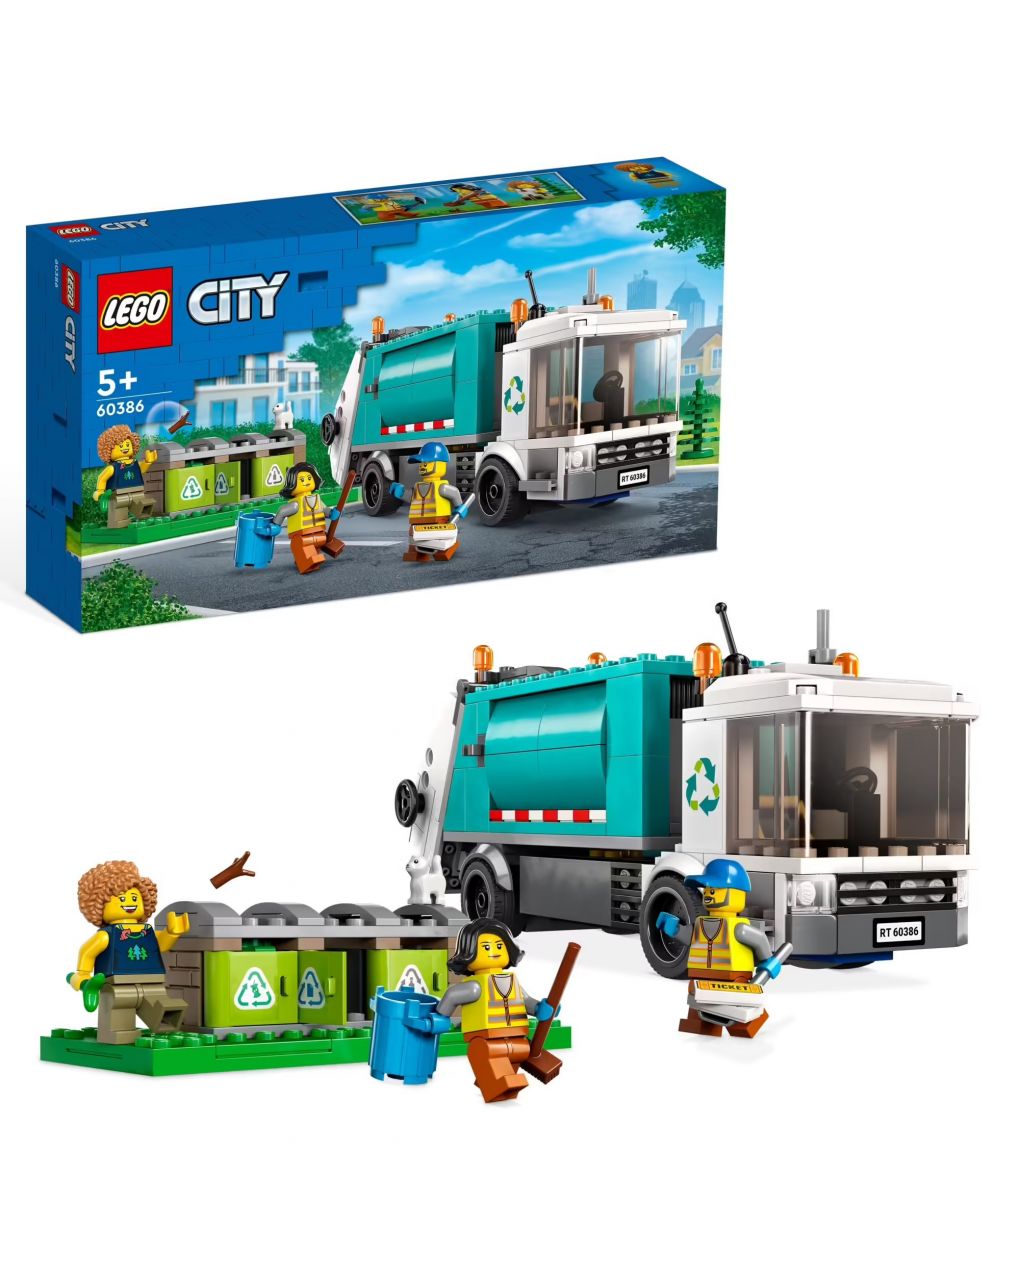 Camion per il riciclaggio dei rifiuti - giocattolo con 3 bidoni raccolta differenziata - lego city - LEGO